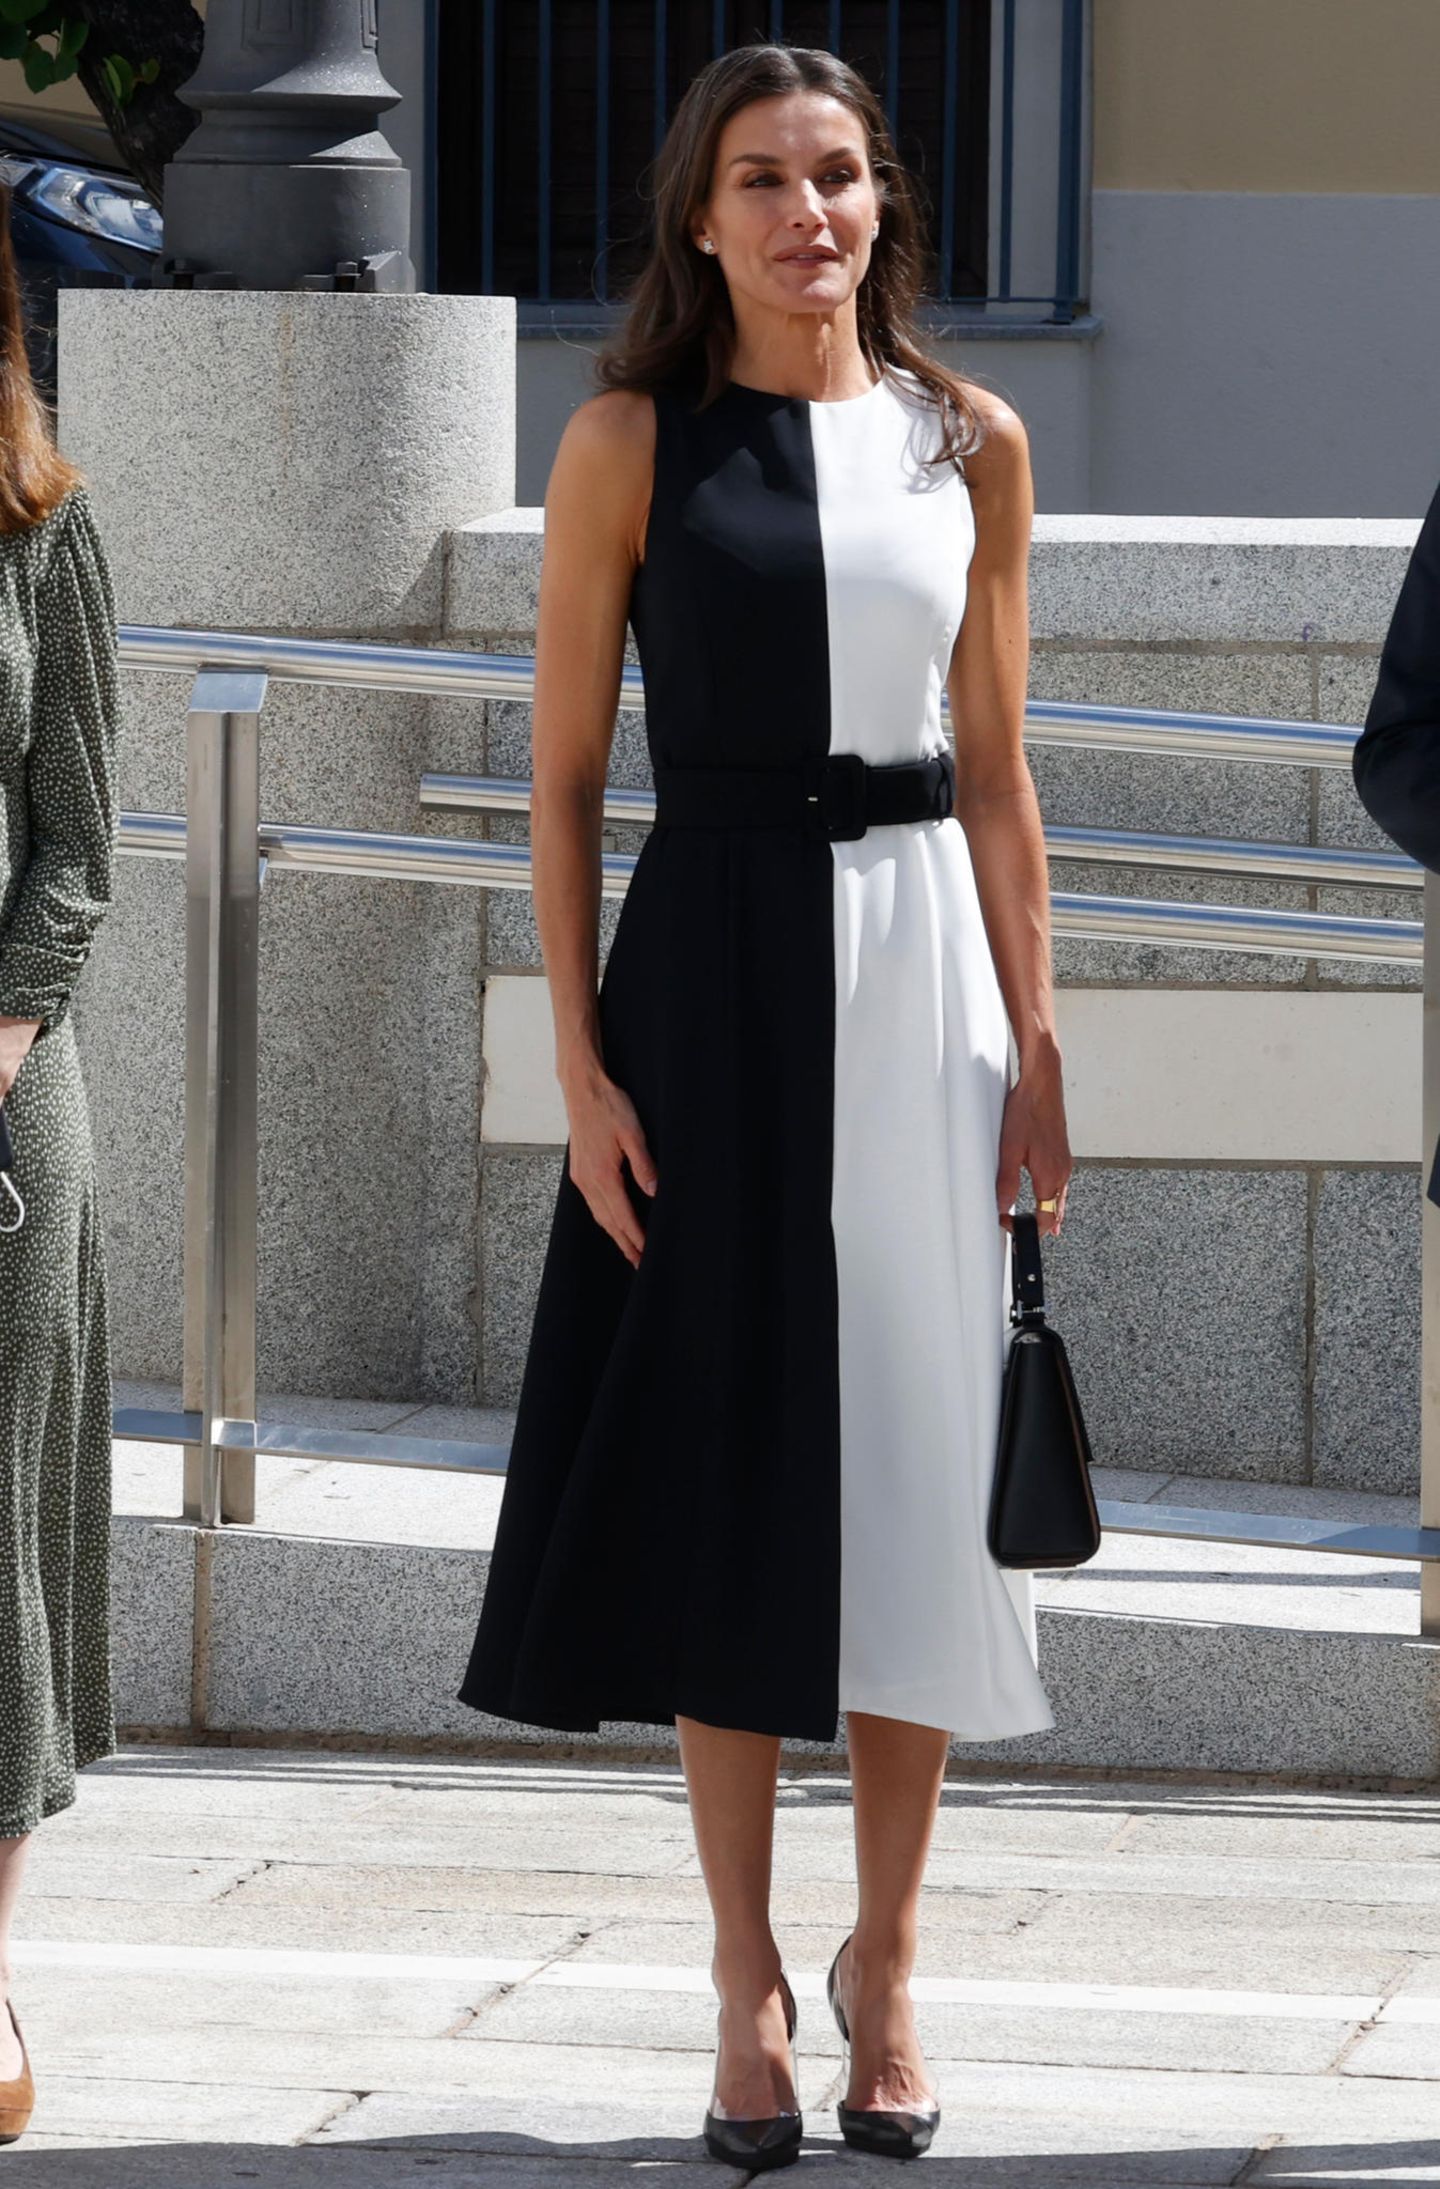 Bei einem Termin im spanischen Merida beweist Königin Letizia wieder einmal ihr Modebewusstsein. Das schwarz-weiße Two-Tone-Kleid steht der 49-Jährigen nicht nur hervorragend, es ist auch gerade absolut angesagt, denn Letizia ist bei dem Event nicht die einzige Dame, die es trägt.